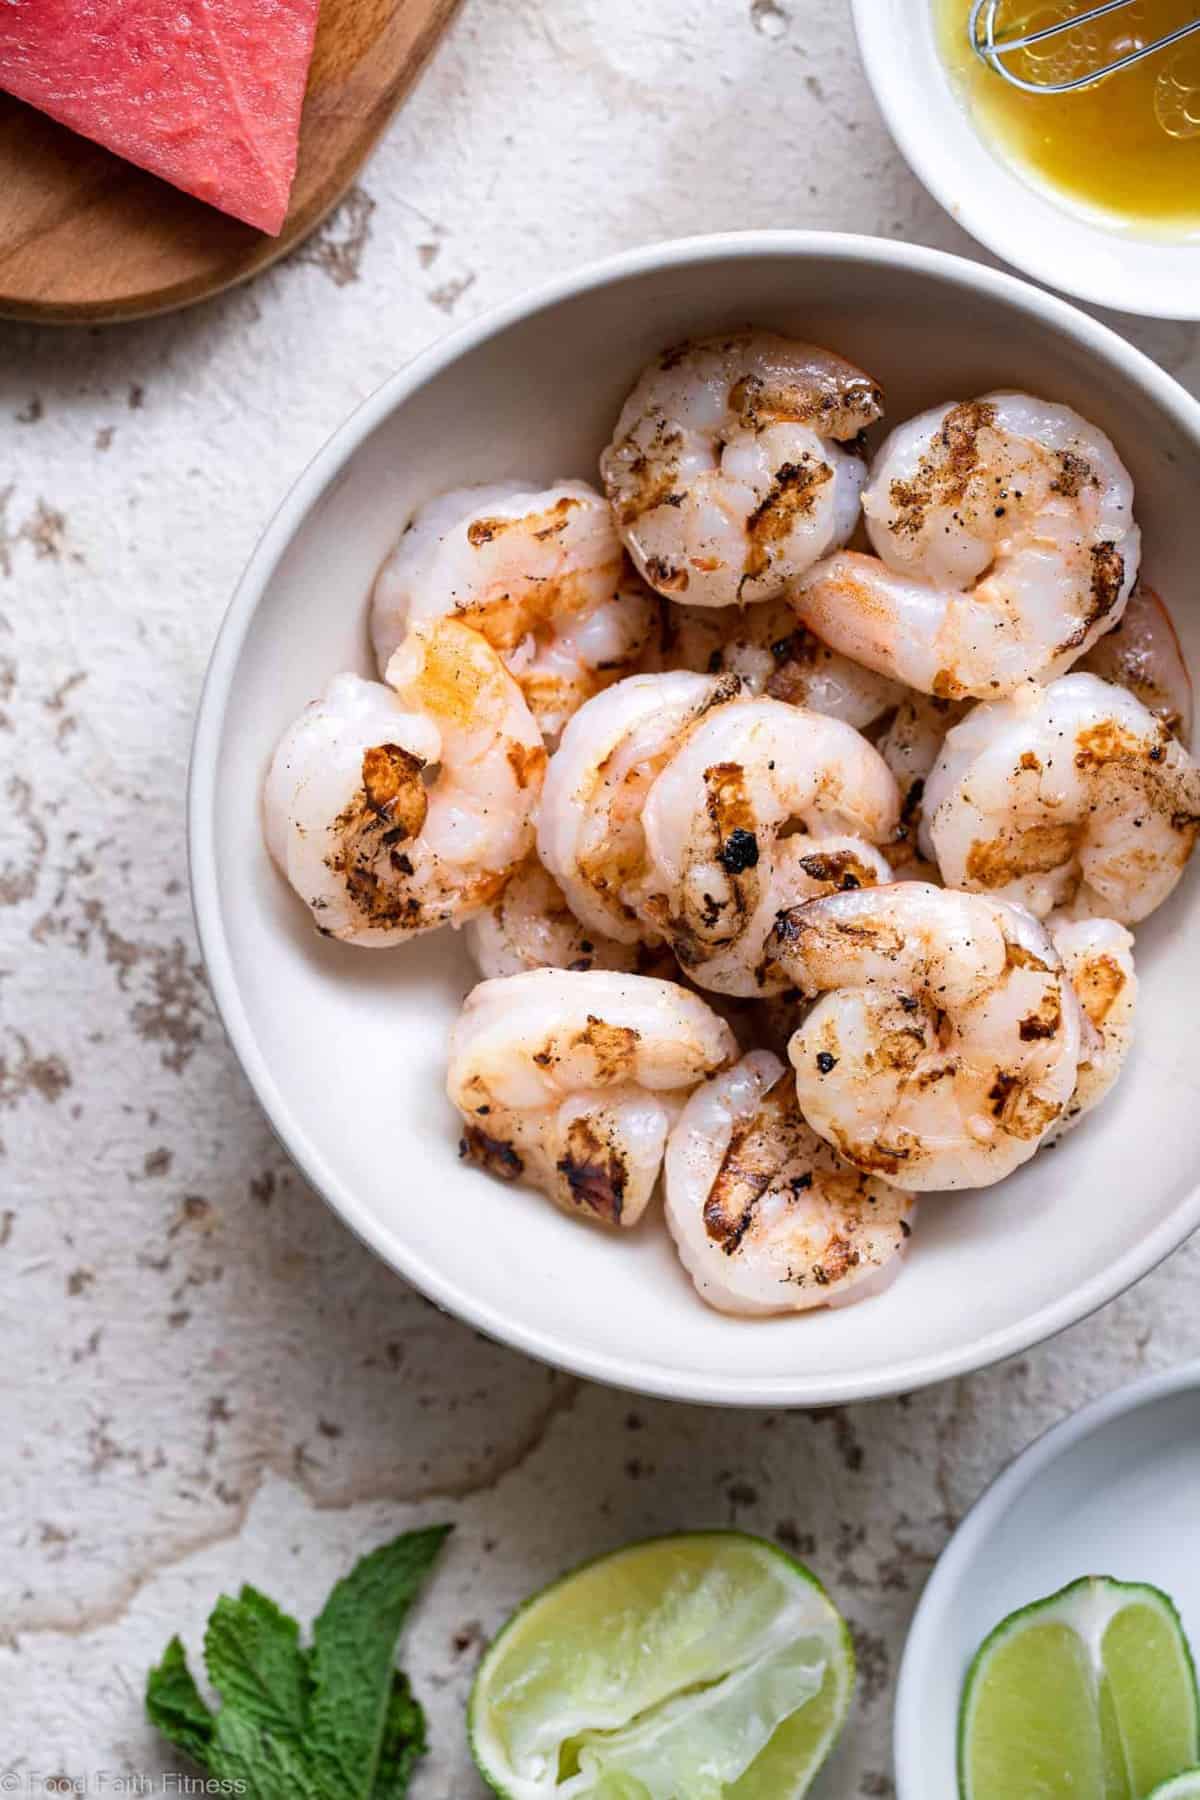 Grilled shrimp in a bowl